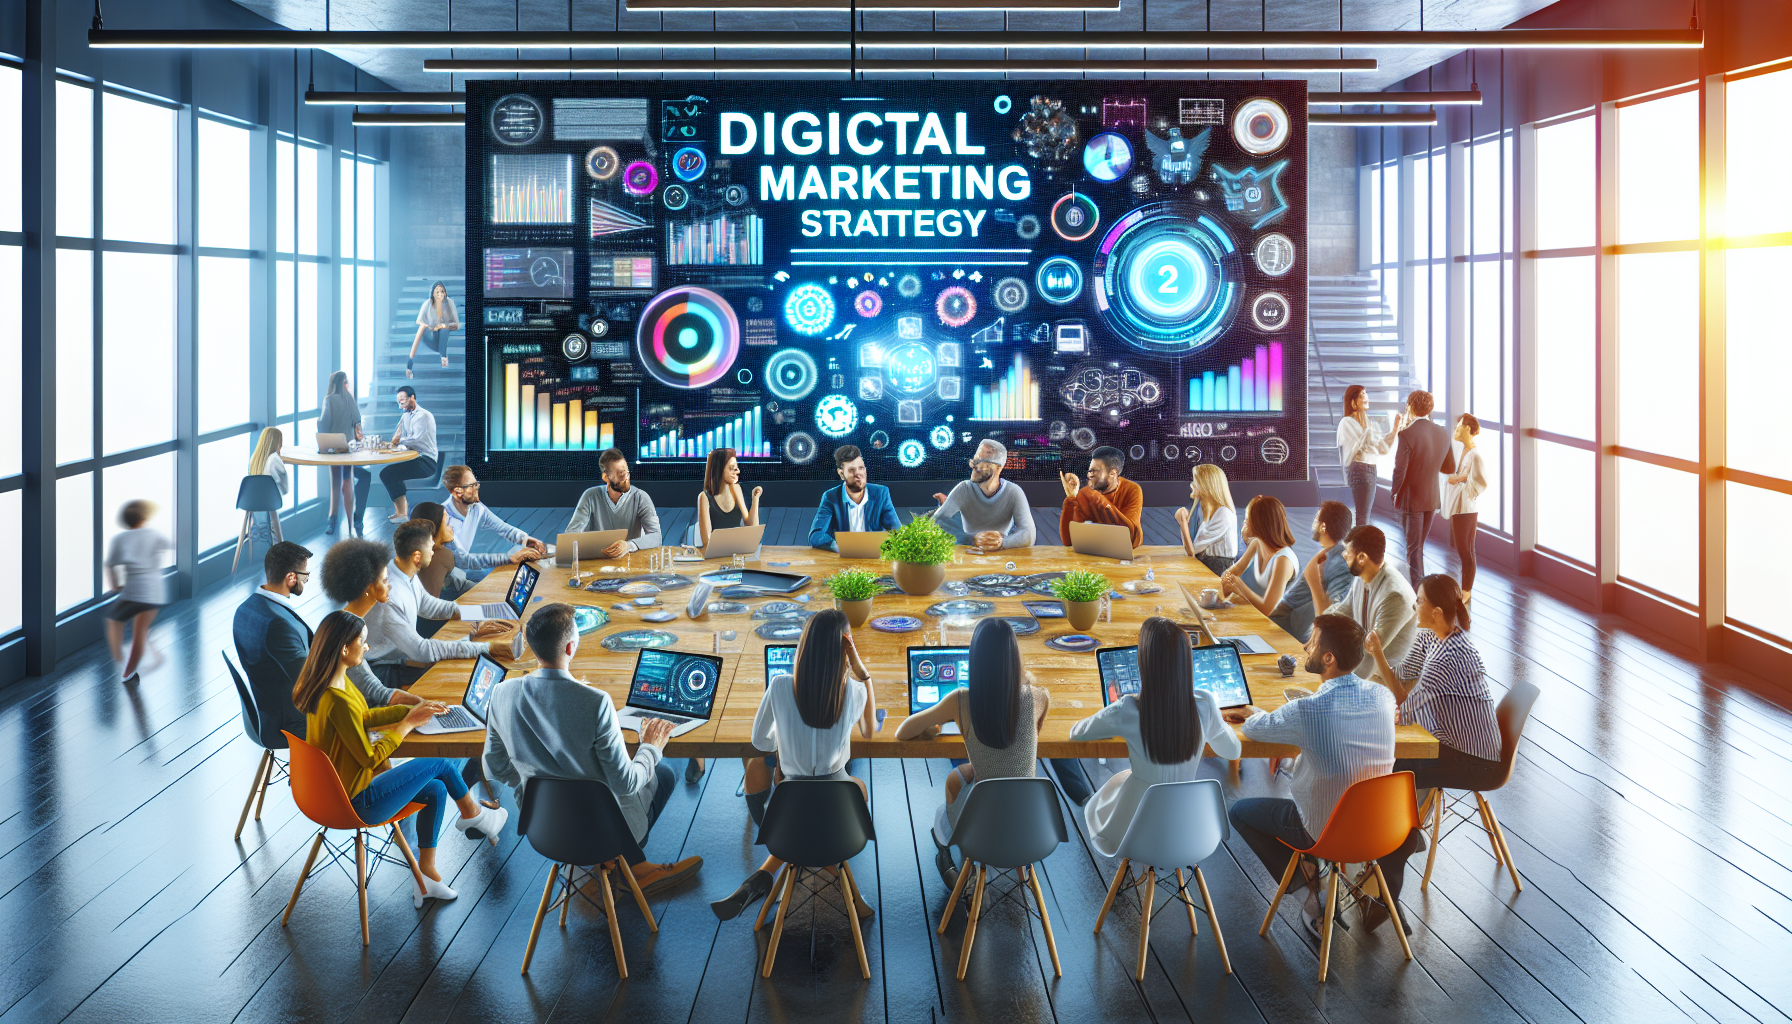 découvrez notre formation en marketing digital axée sur la stratégie de marketing digital. apprenez à développer et mettre en œuvre des stratégies efficaces pour réussir dans le monde du marketing en ligne.